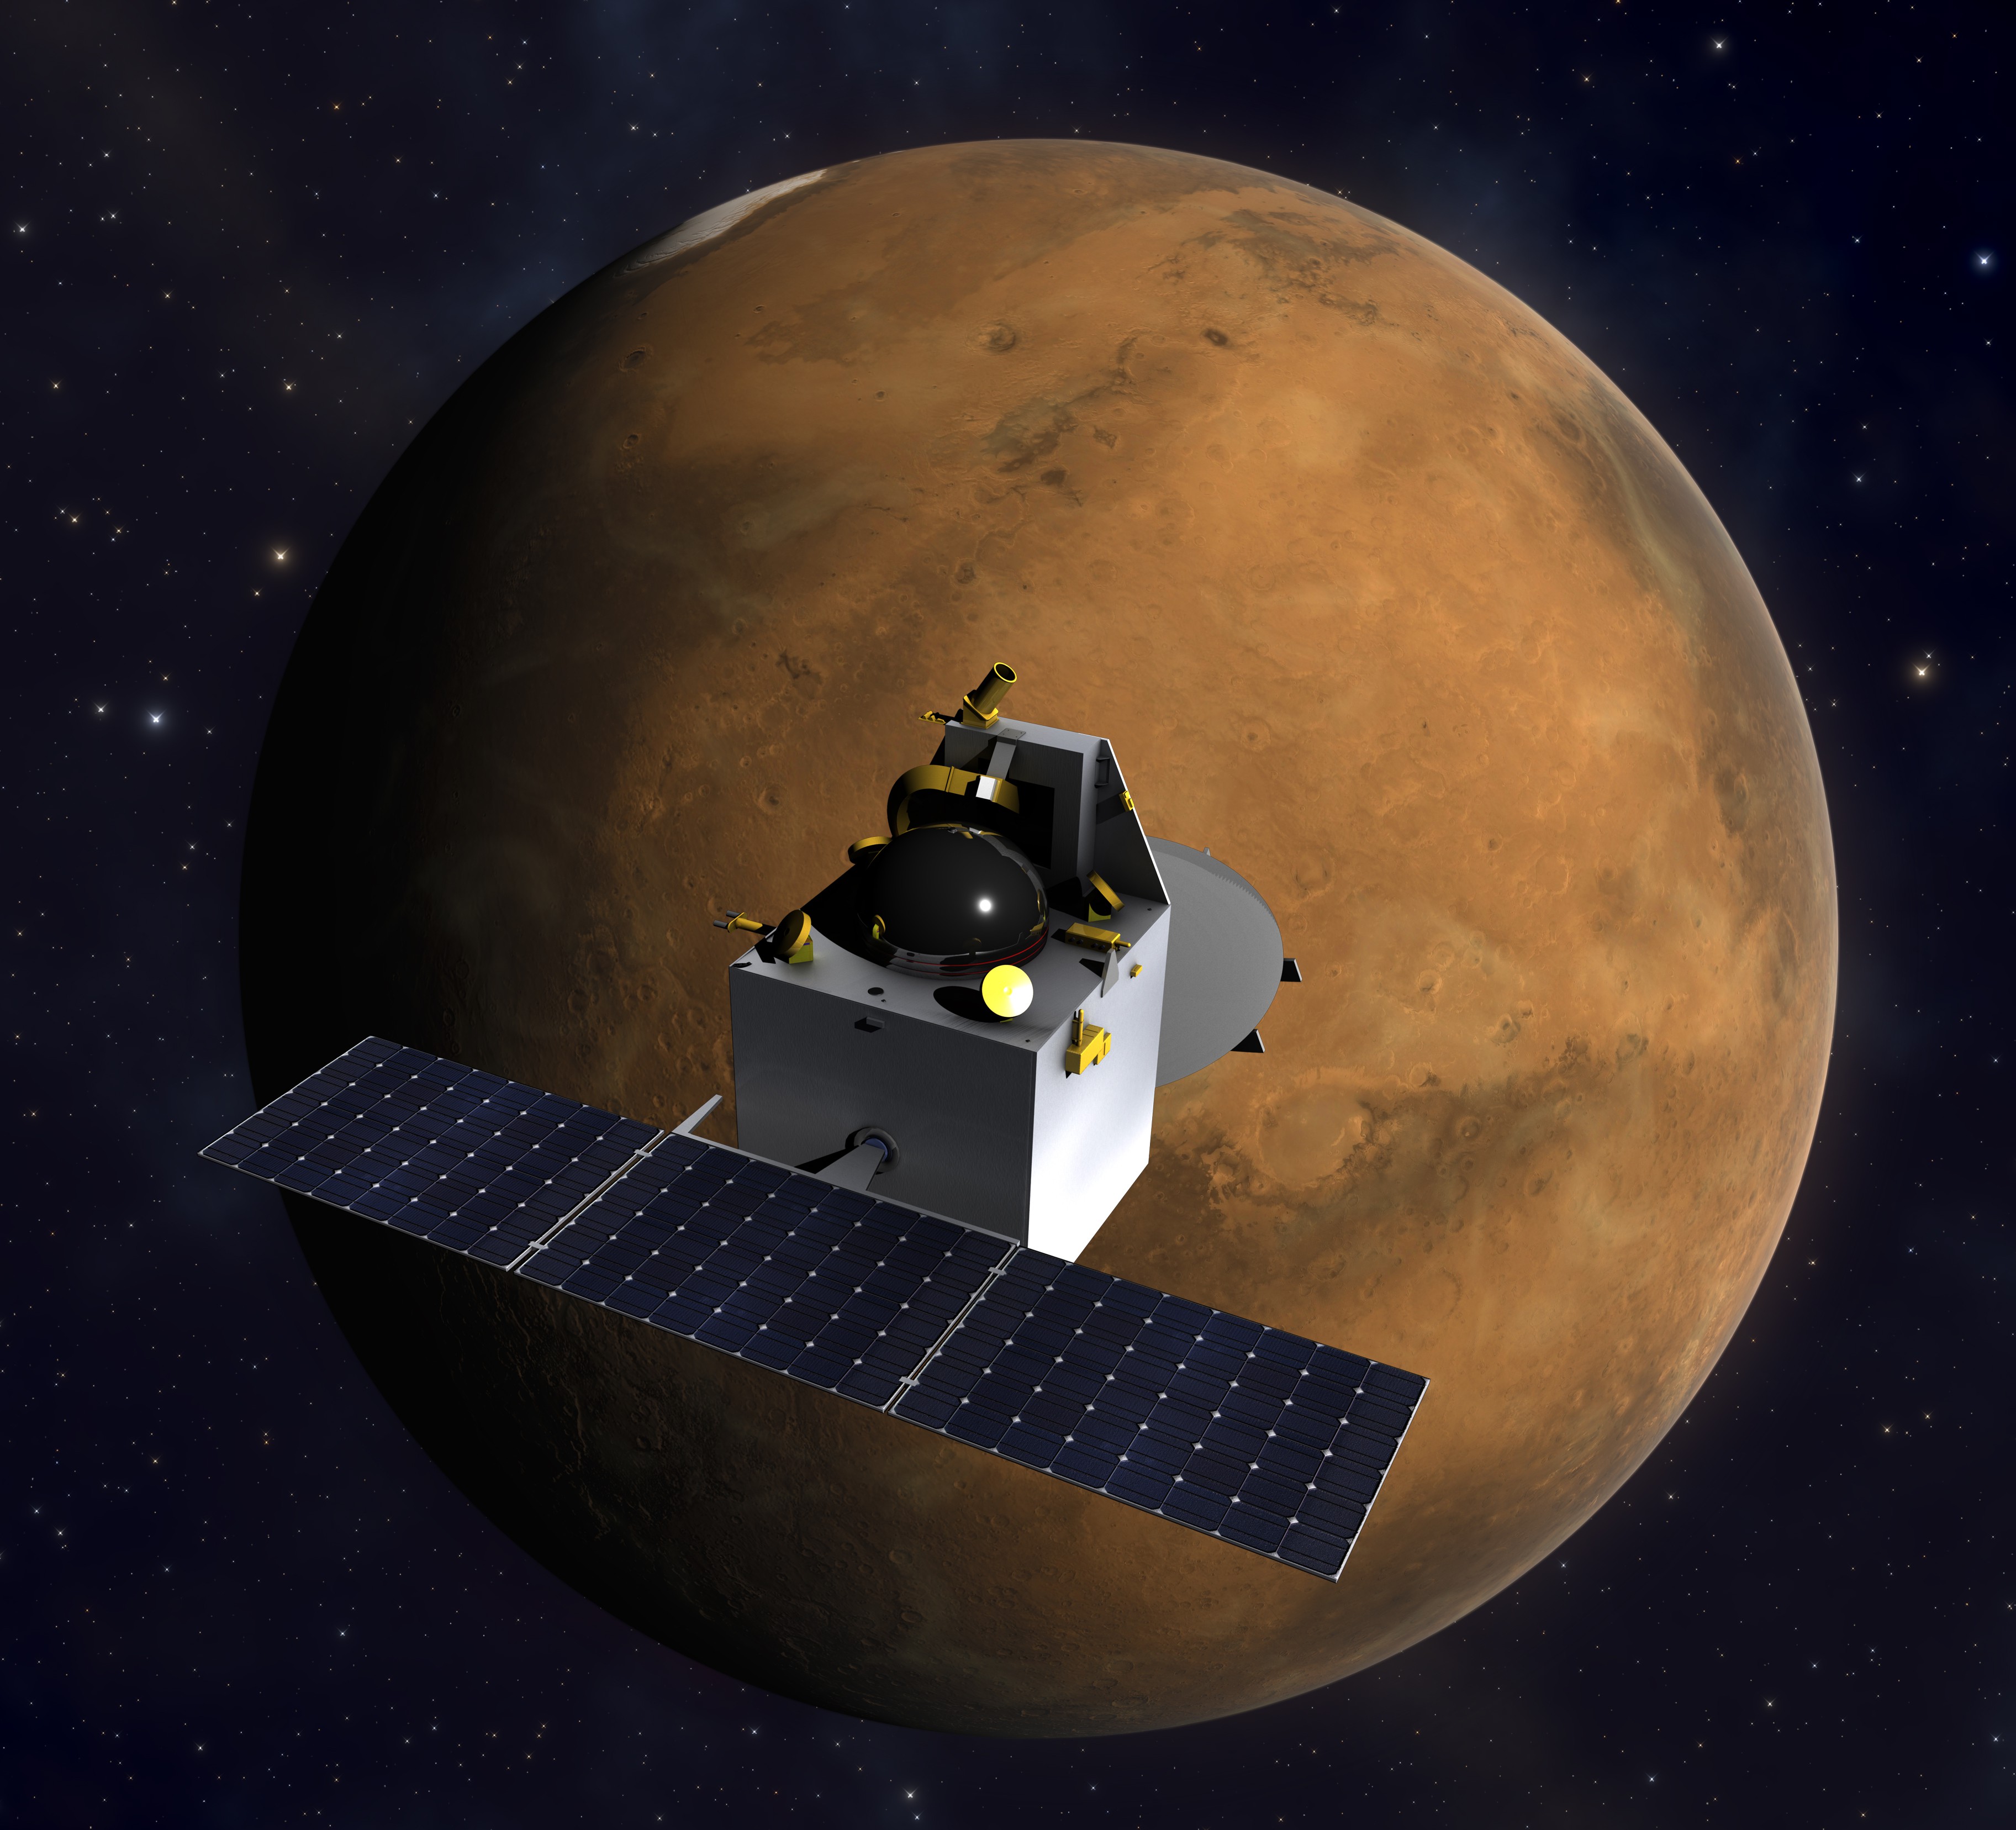 图为火星轨道探测器但是随着中国在深空探索领域的进步,美国的优势